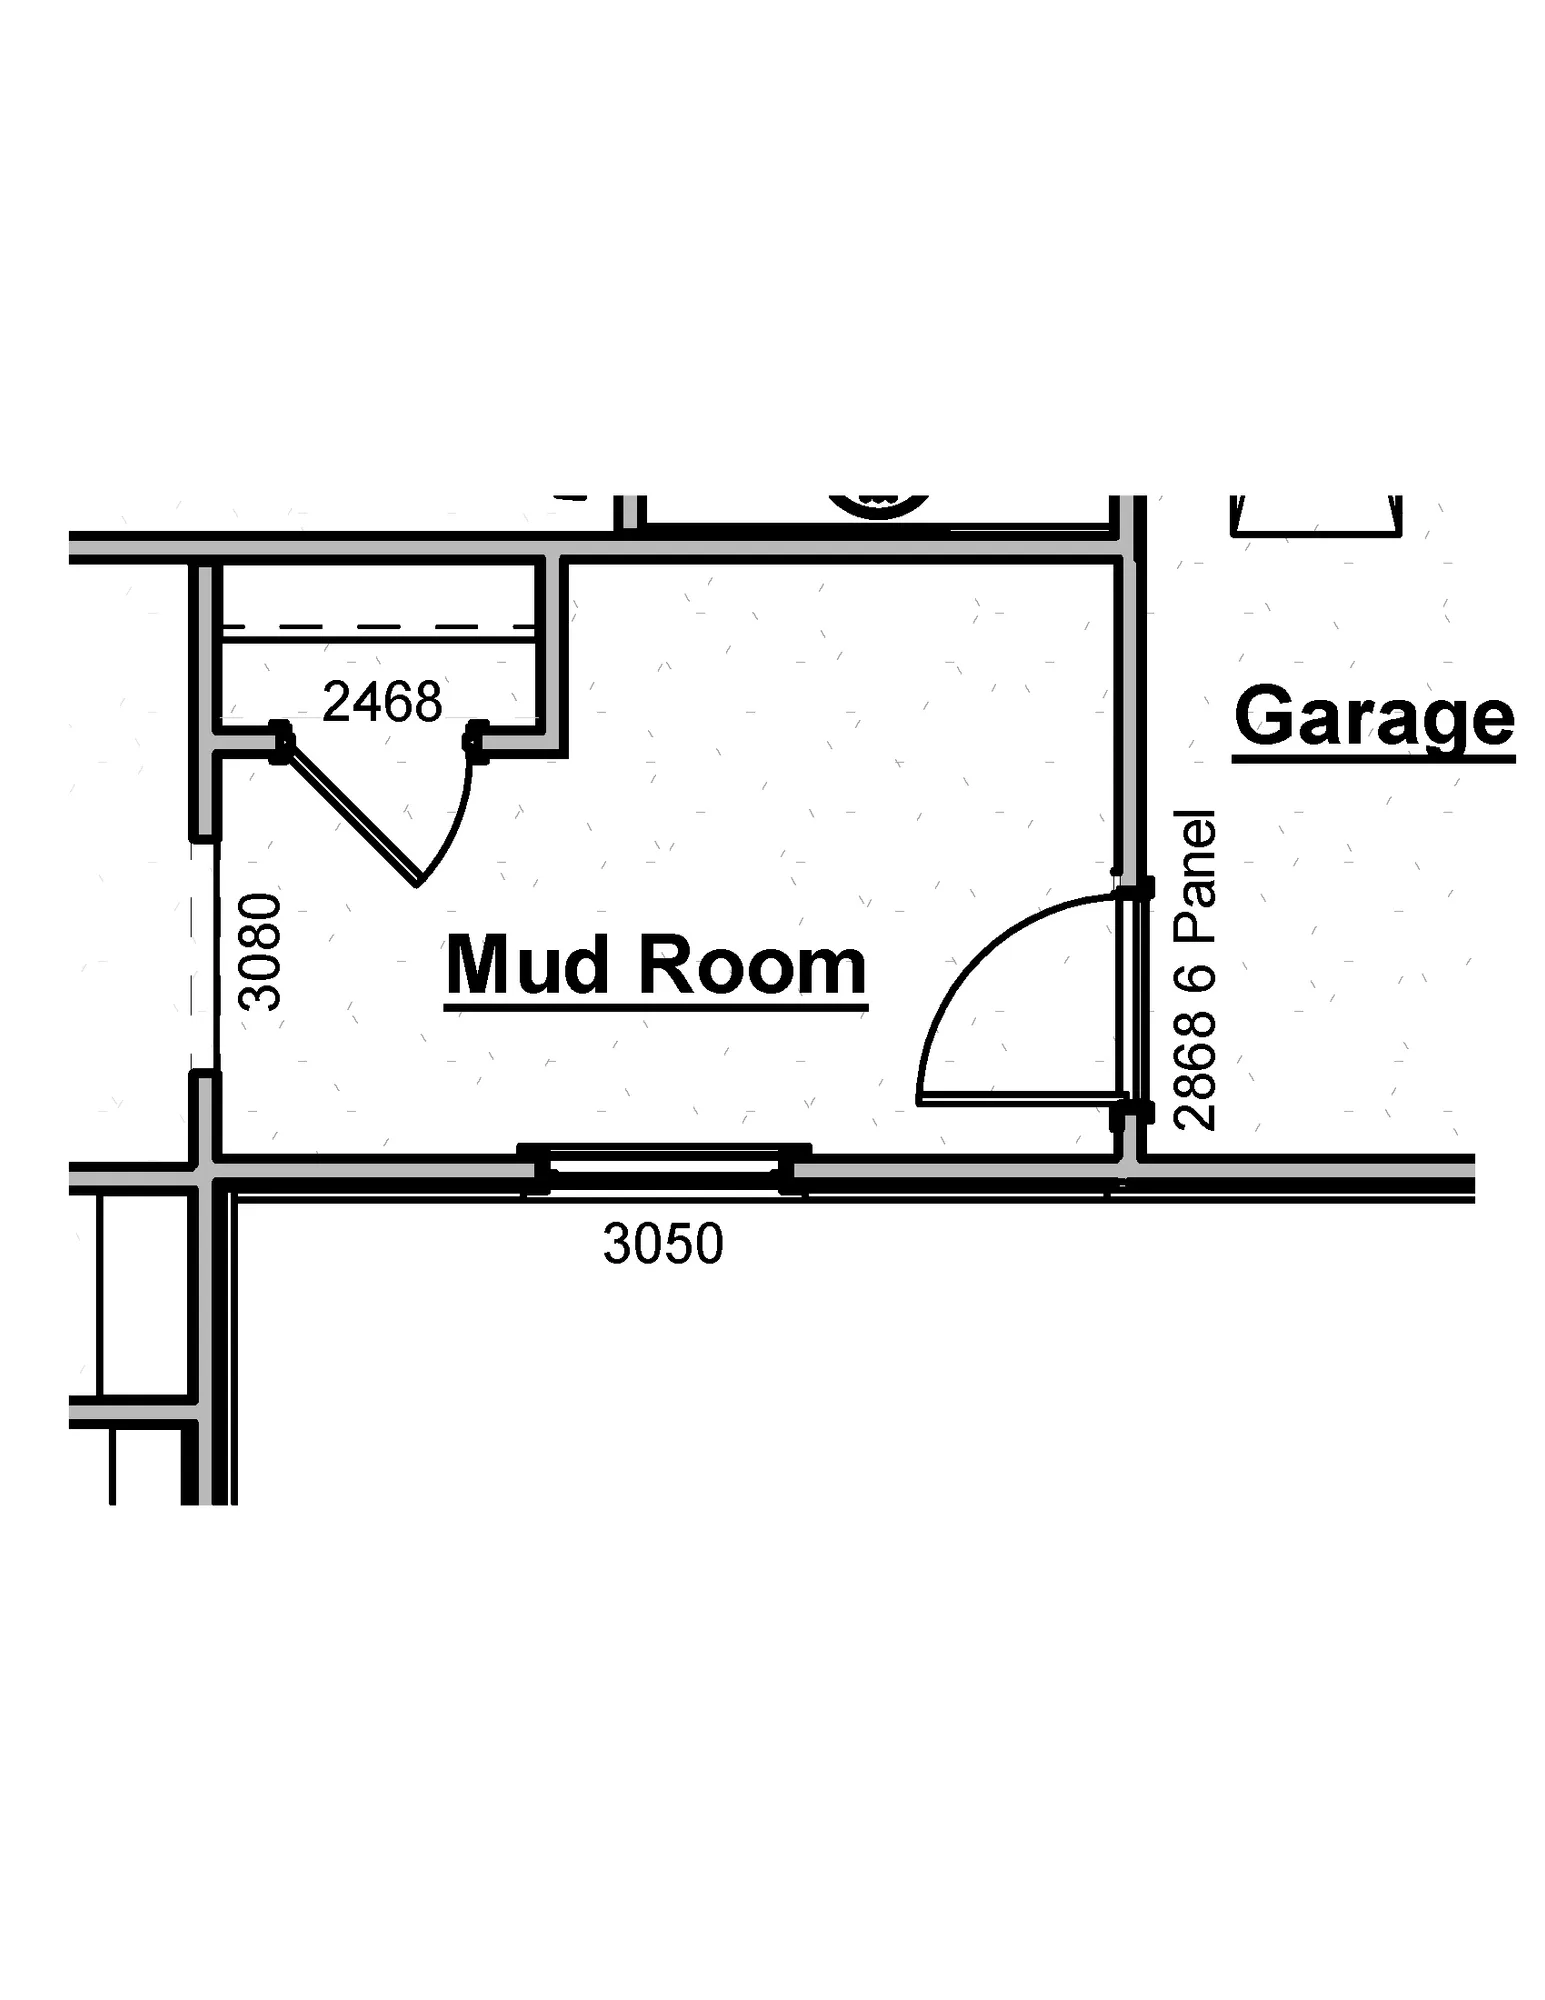 Mud Room - undefined